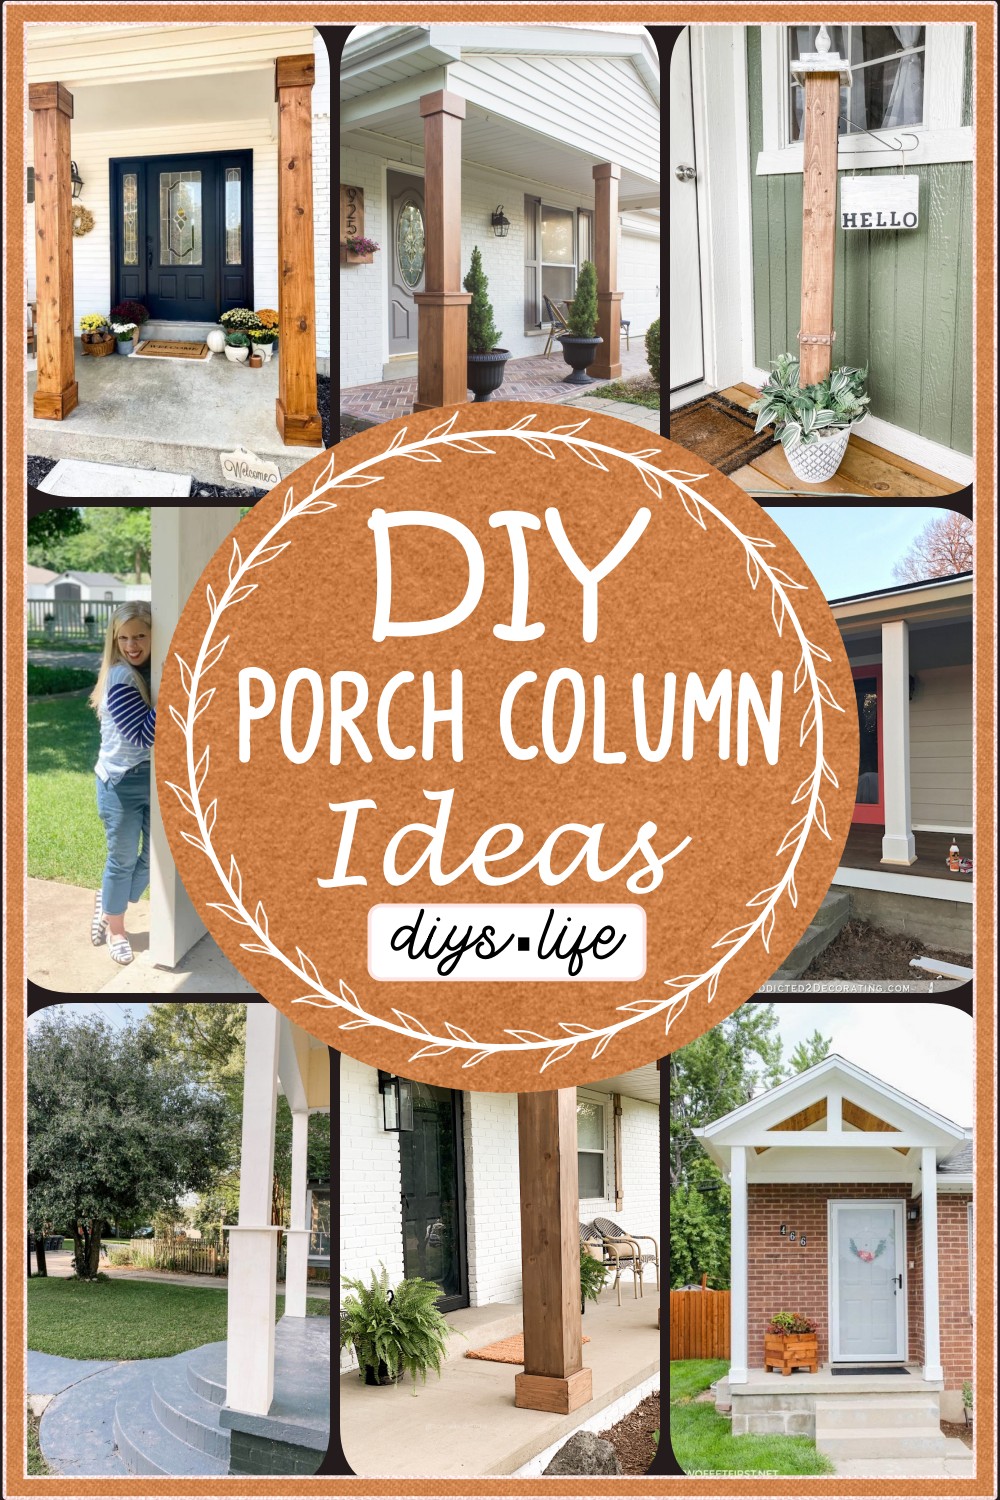 DIY Porch Column